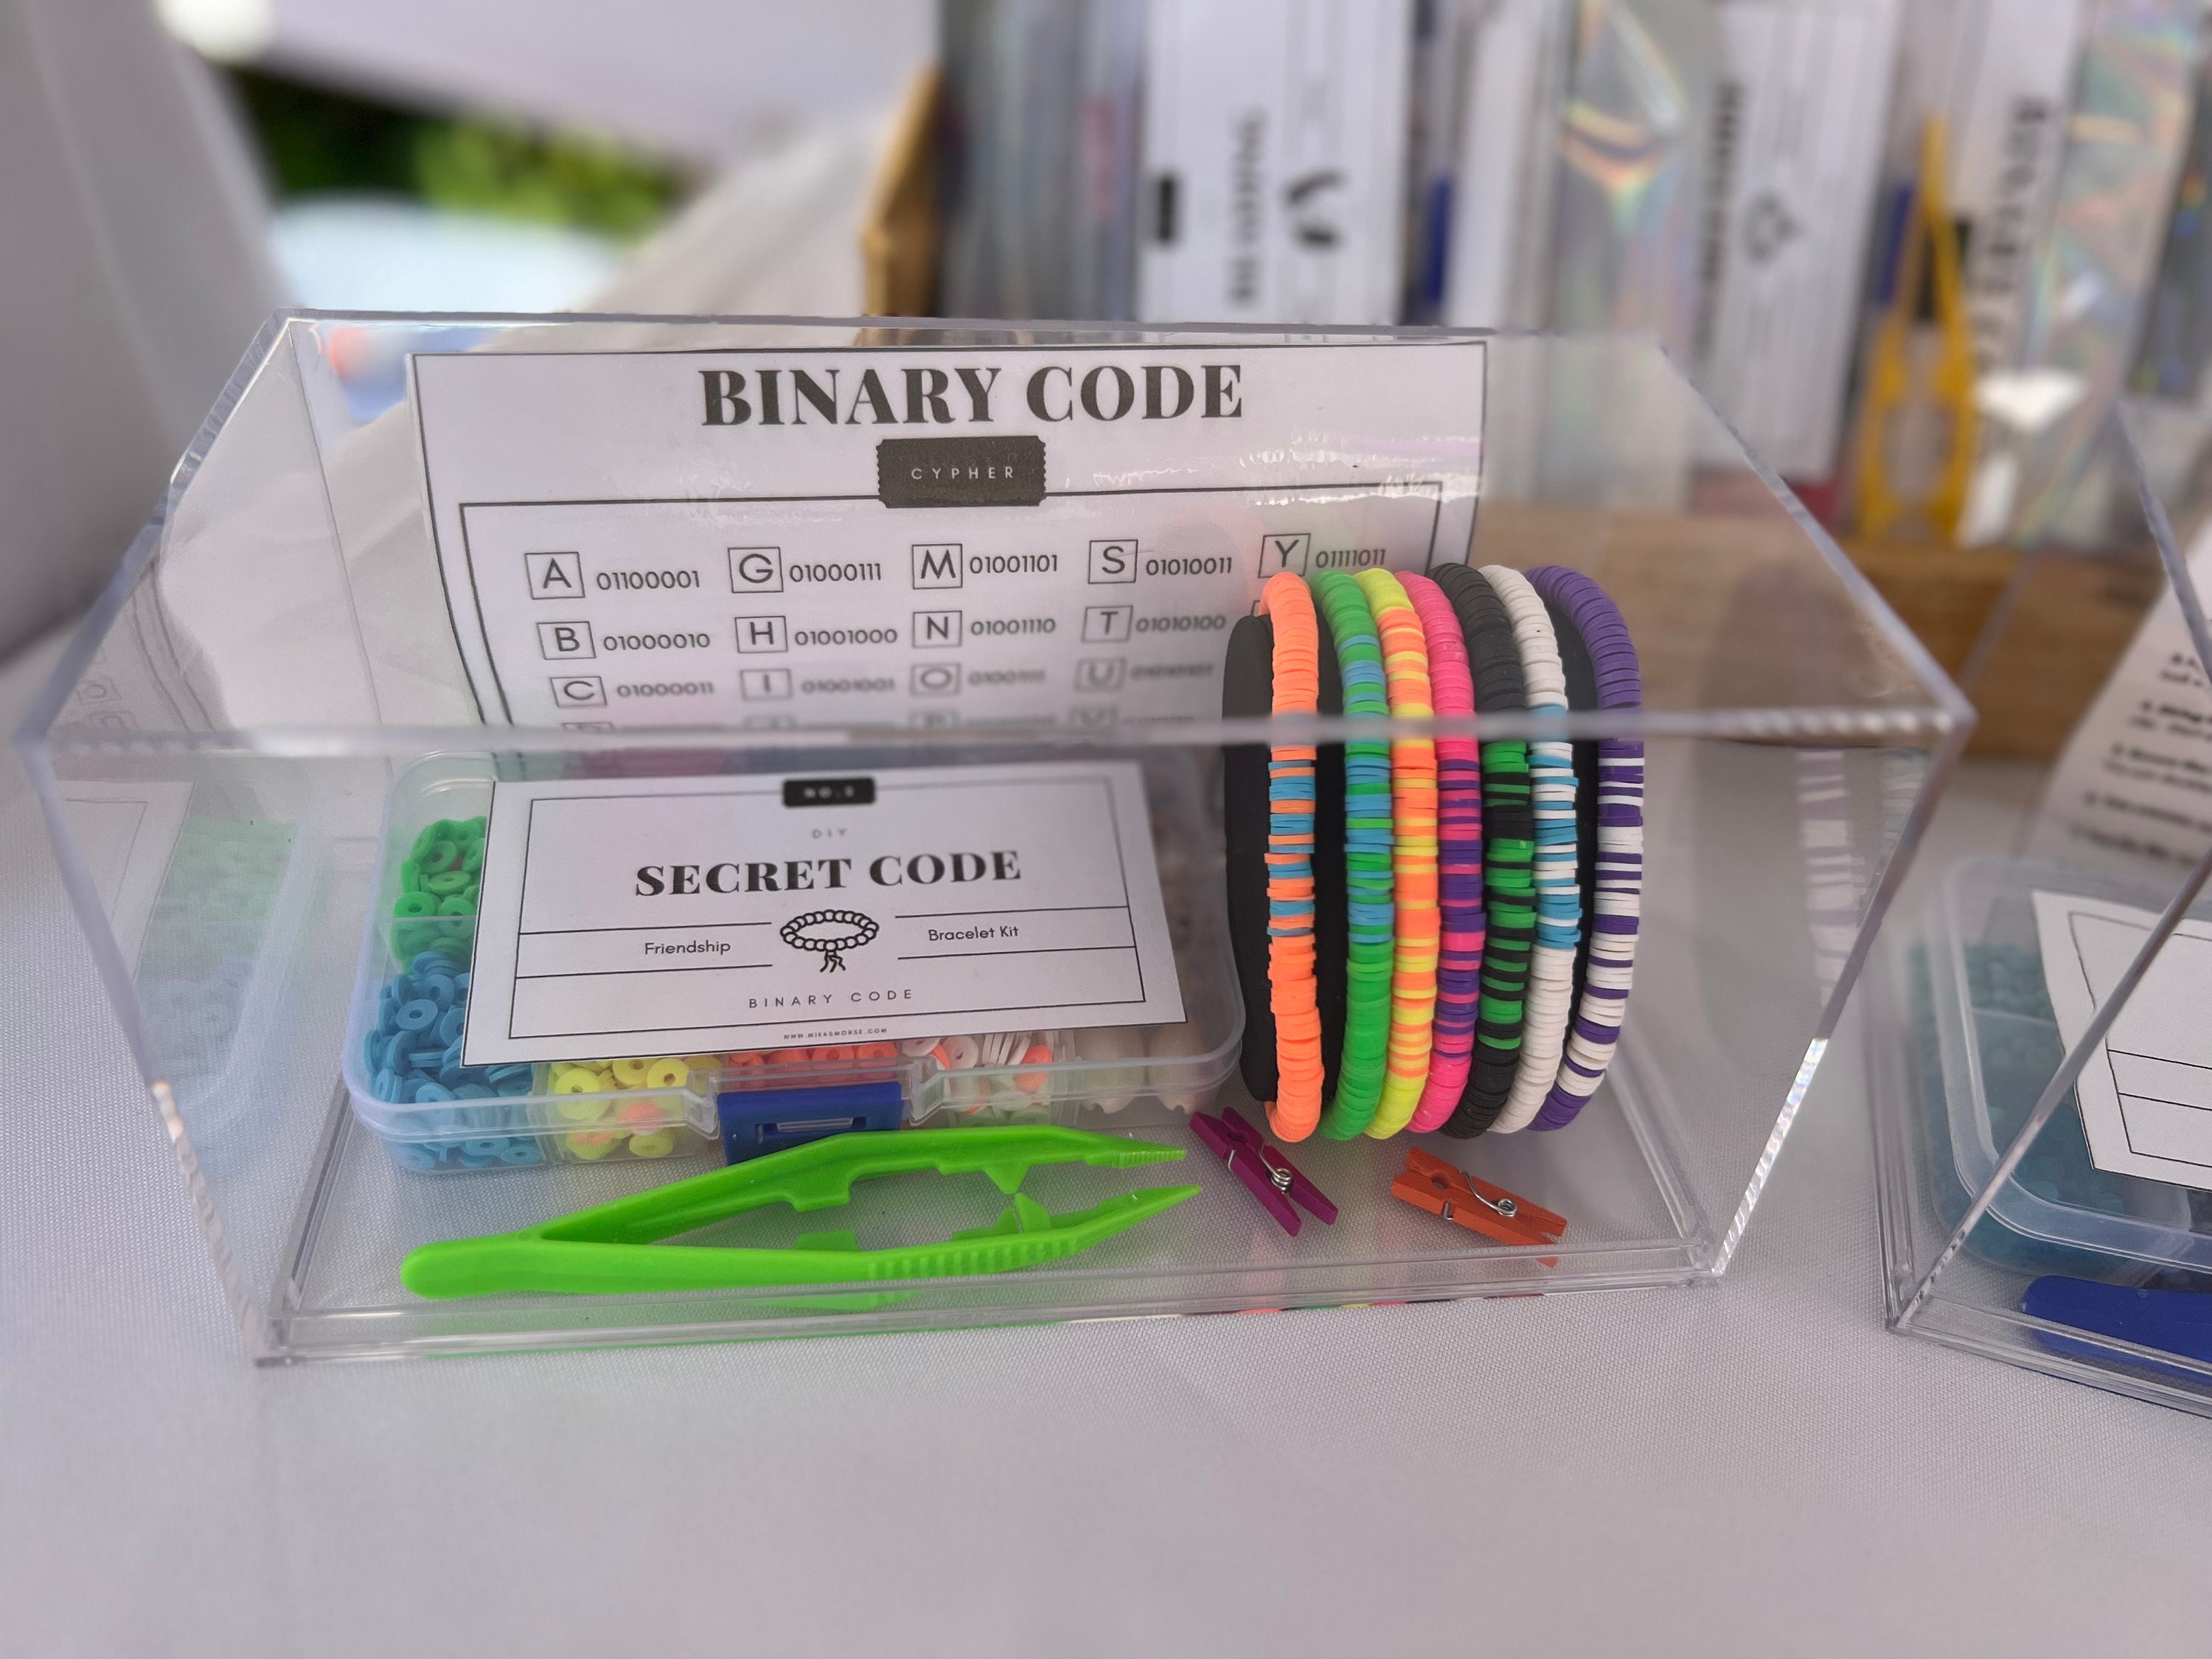 Diy Morse Codebeaded Bracelet Making Kits Including Ccb - Temu